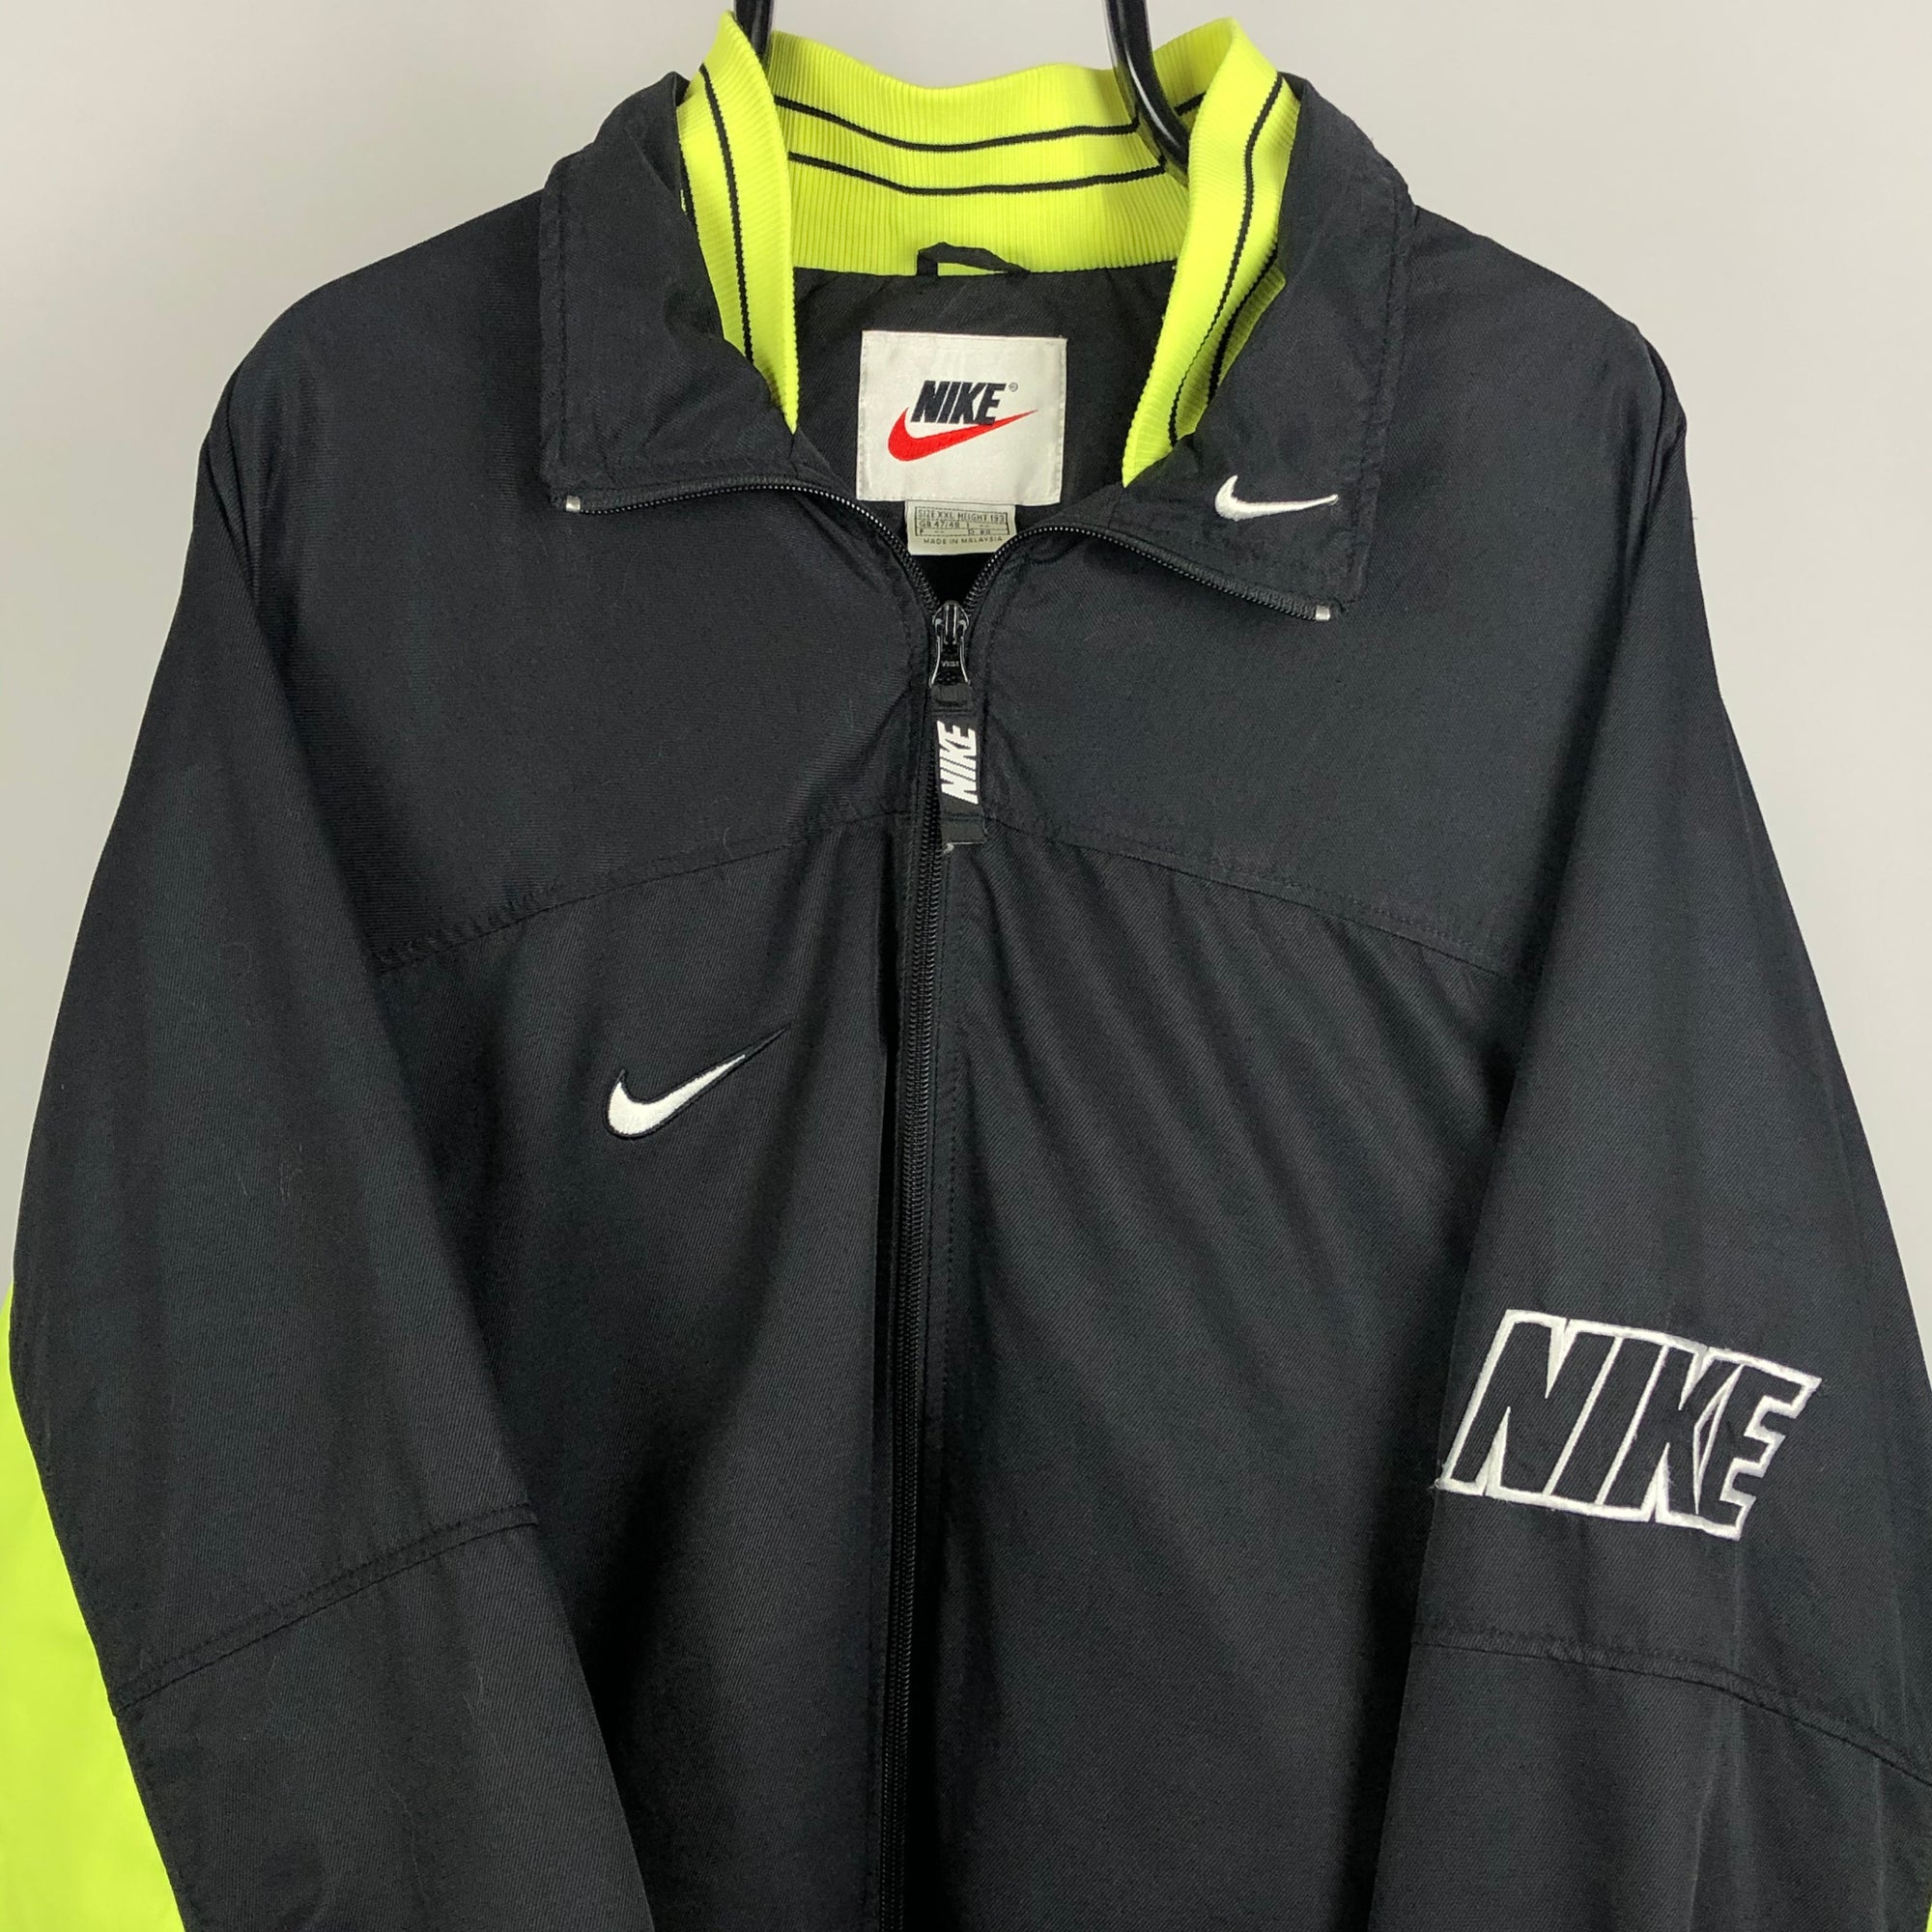 Vintage Nike Spellout Jacket in Black/Neon Green - Men's XXL/Women's XXXL